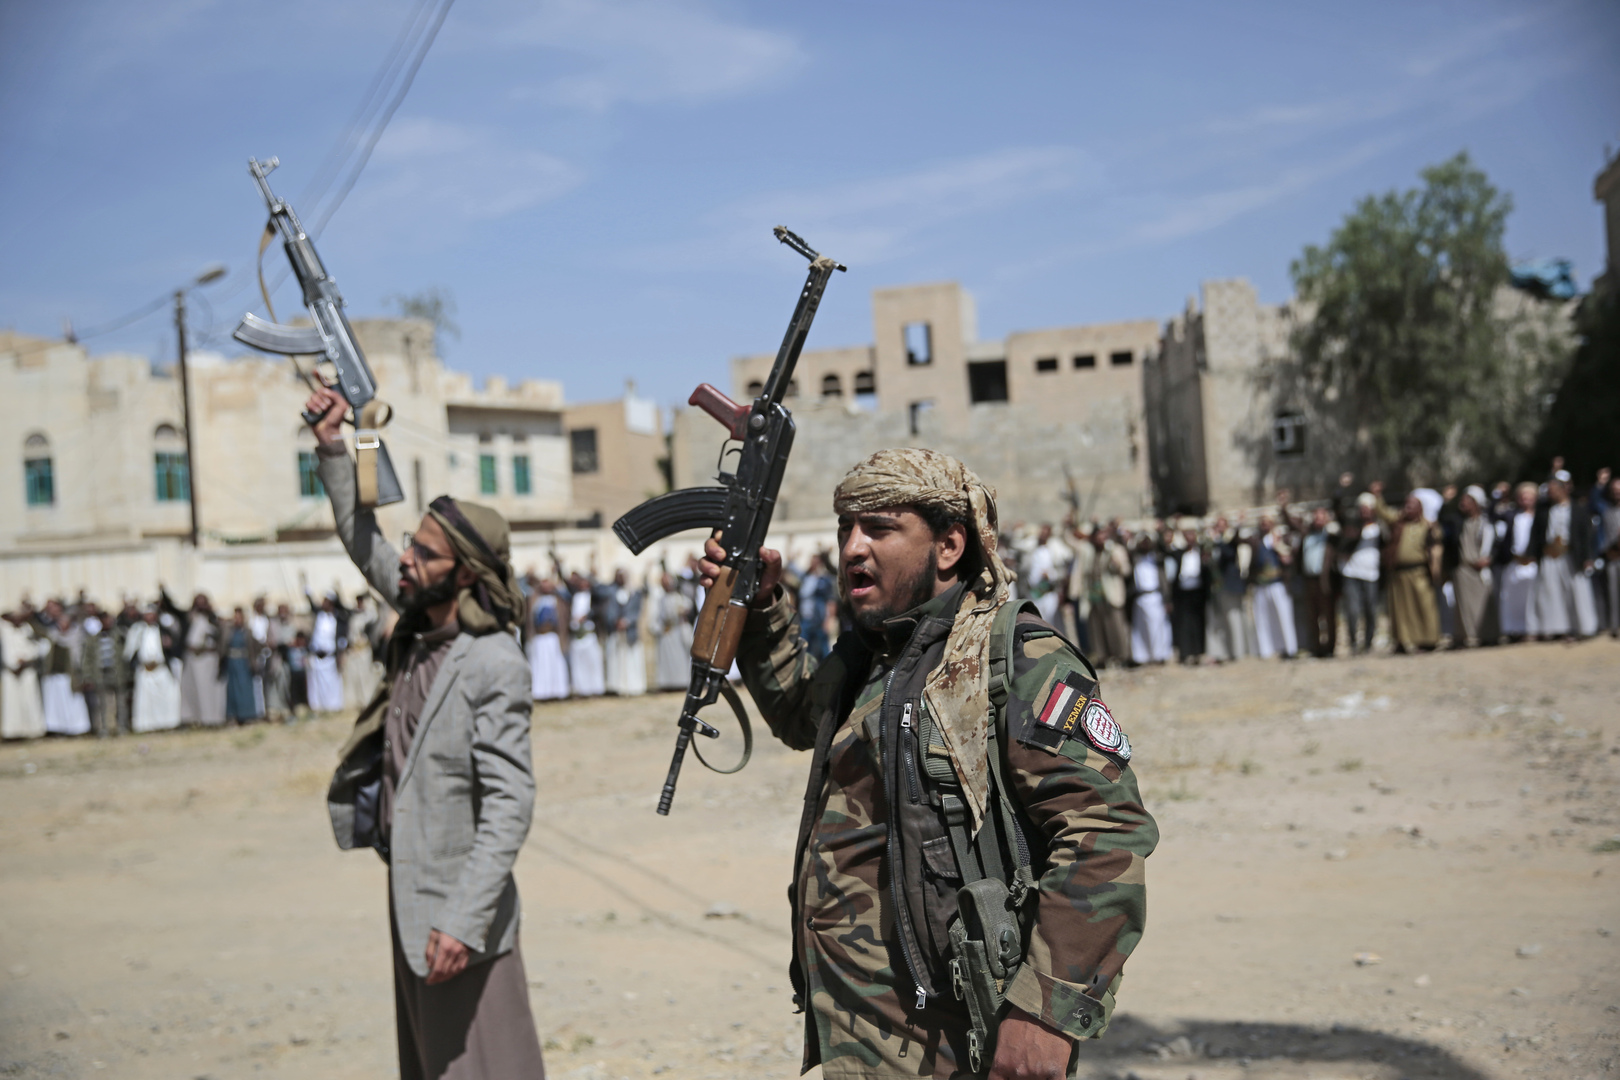 الحوثيون يقررون الإفراج عن قائد بارز في الجيش اليمني